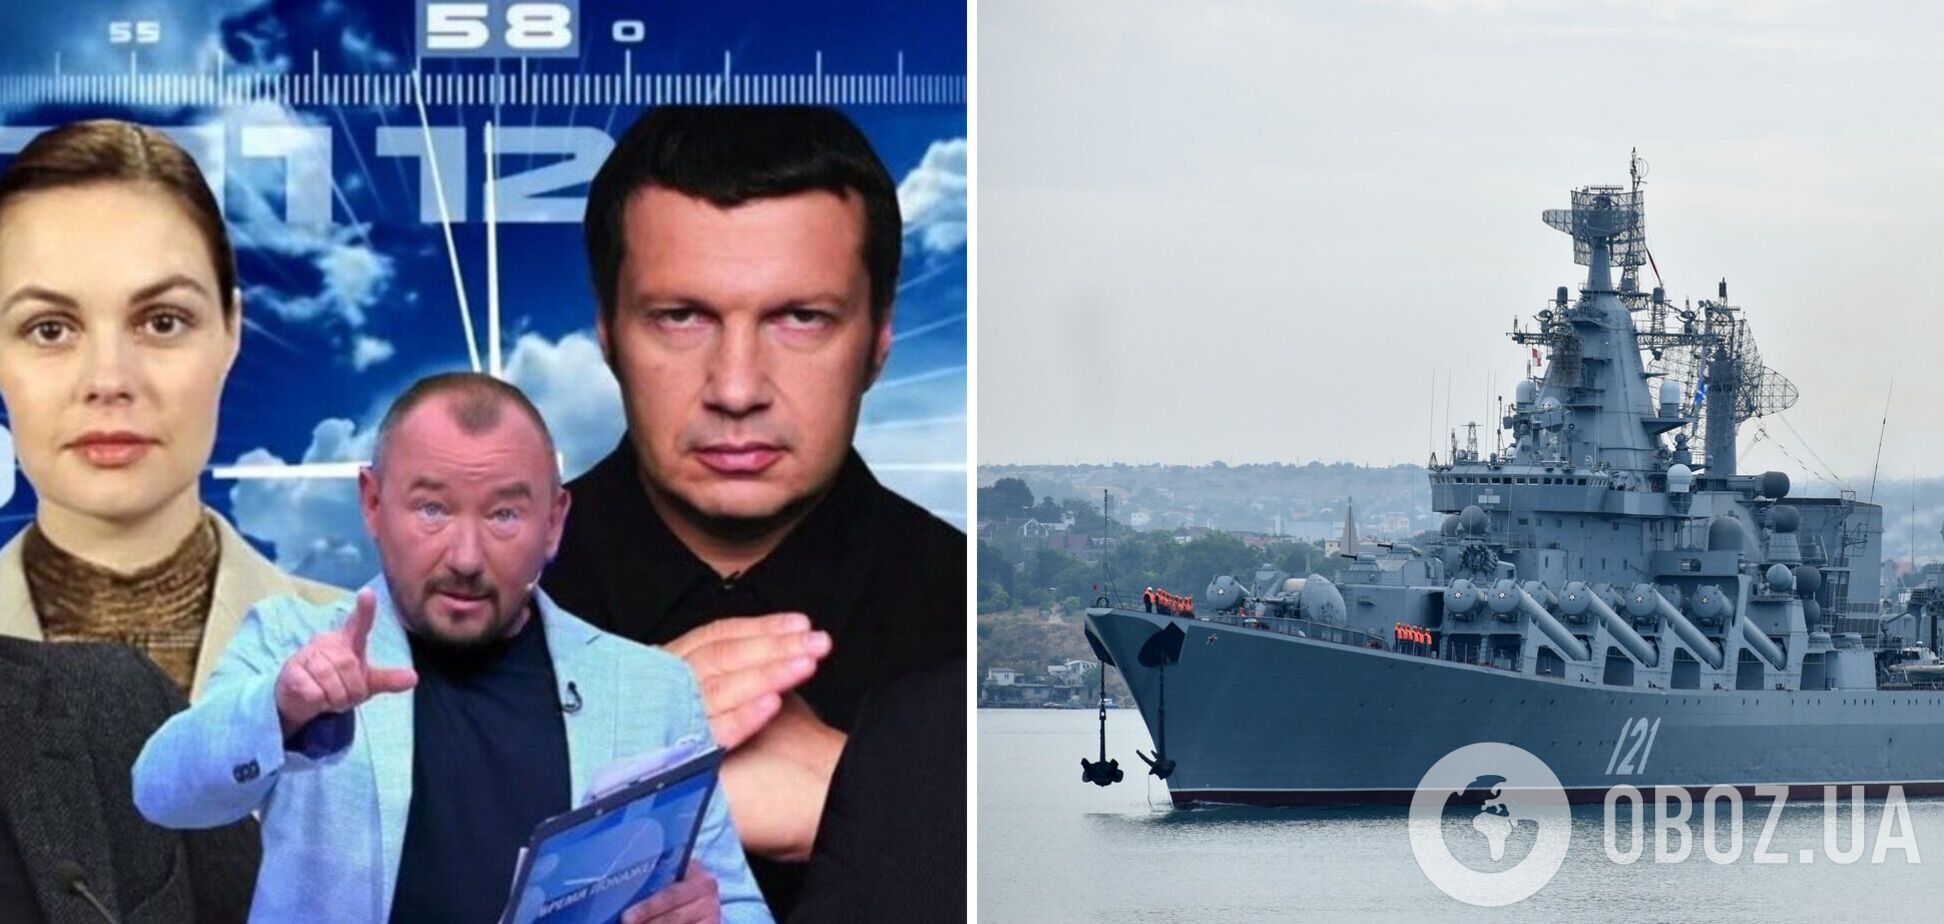 Российские пропагандисты устроили истерику из-за крейсера 'Москва' и назвали его уничтожение 'поводом' для войны. Видео